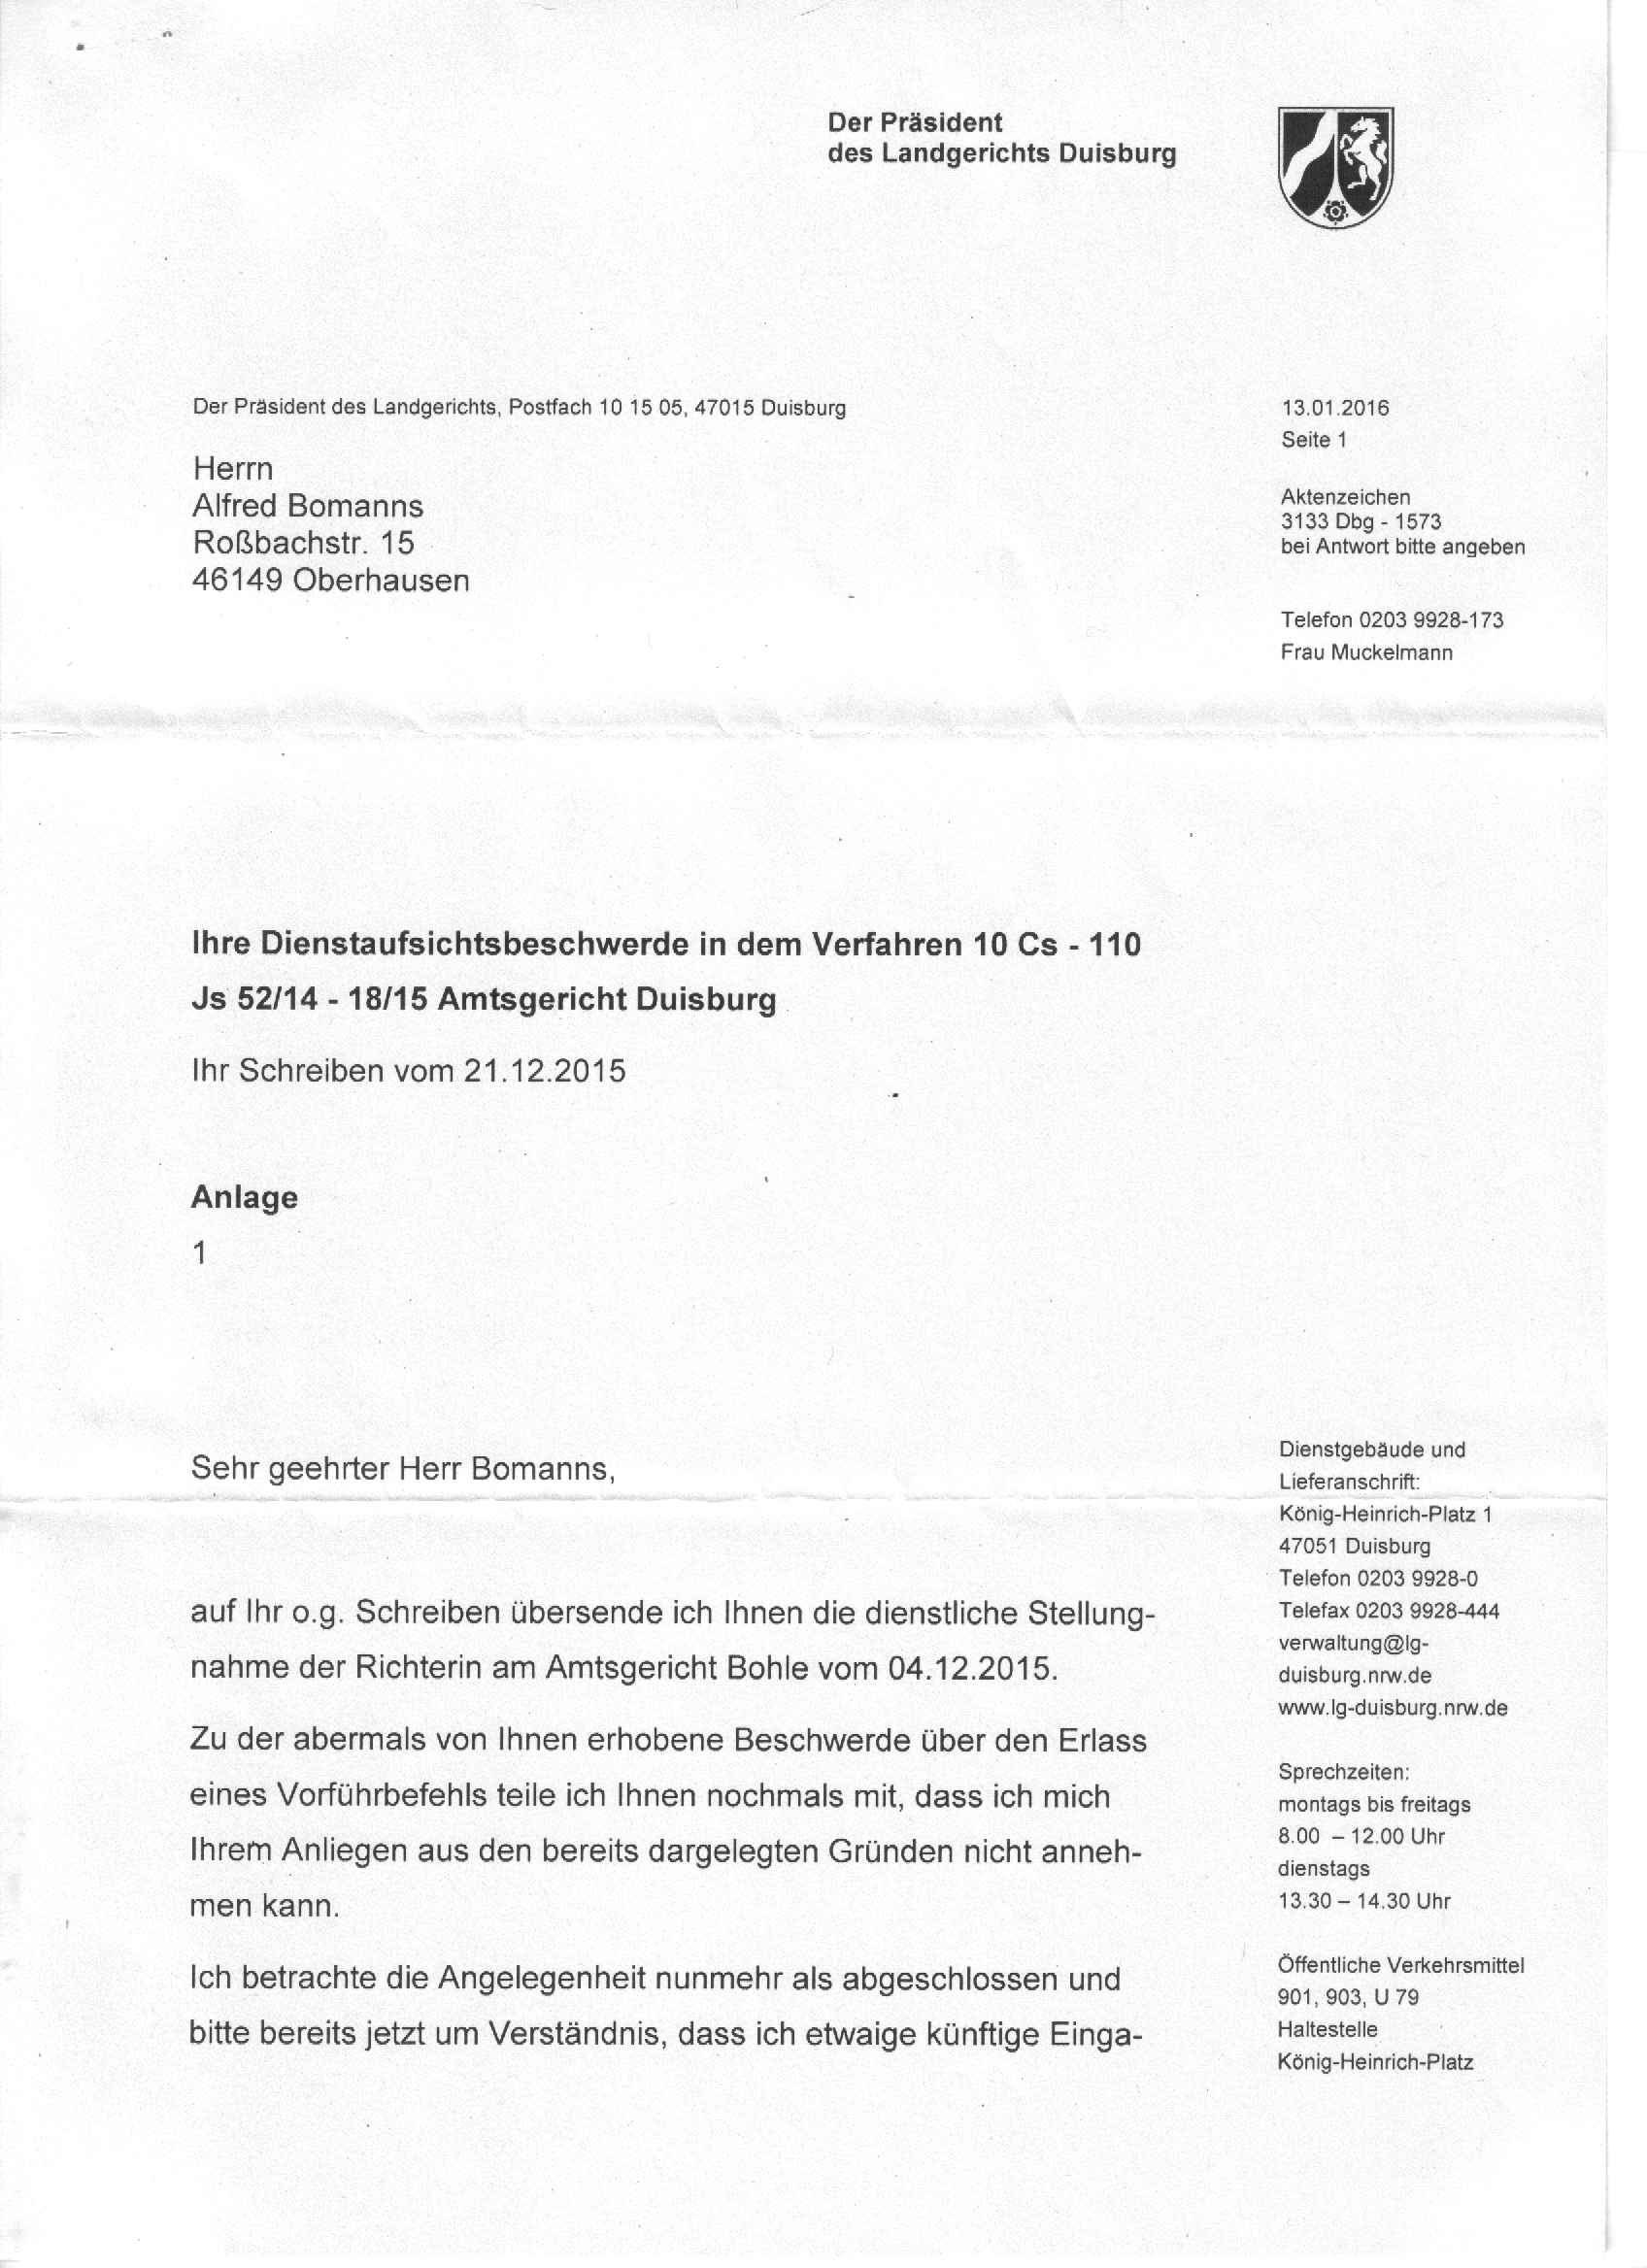 Antwort des Präsidenten des Landgerichts Duisburg, Ulf-Thomas Bender, vom 13.01.2016, S. 1